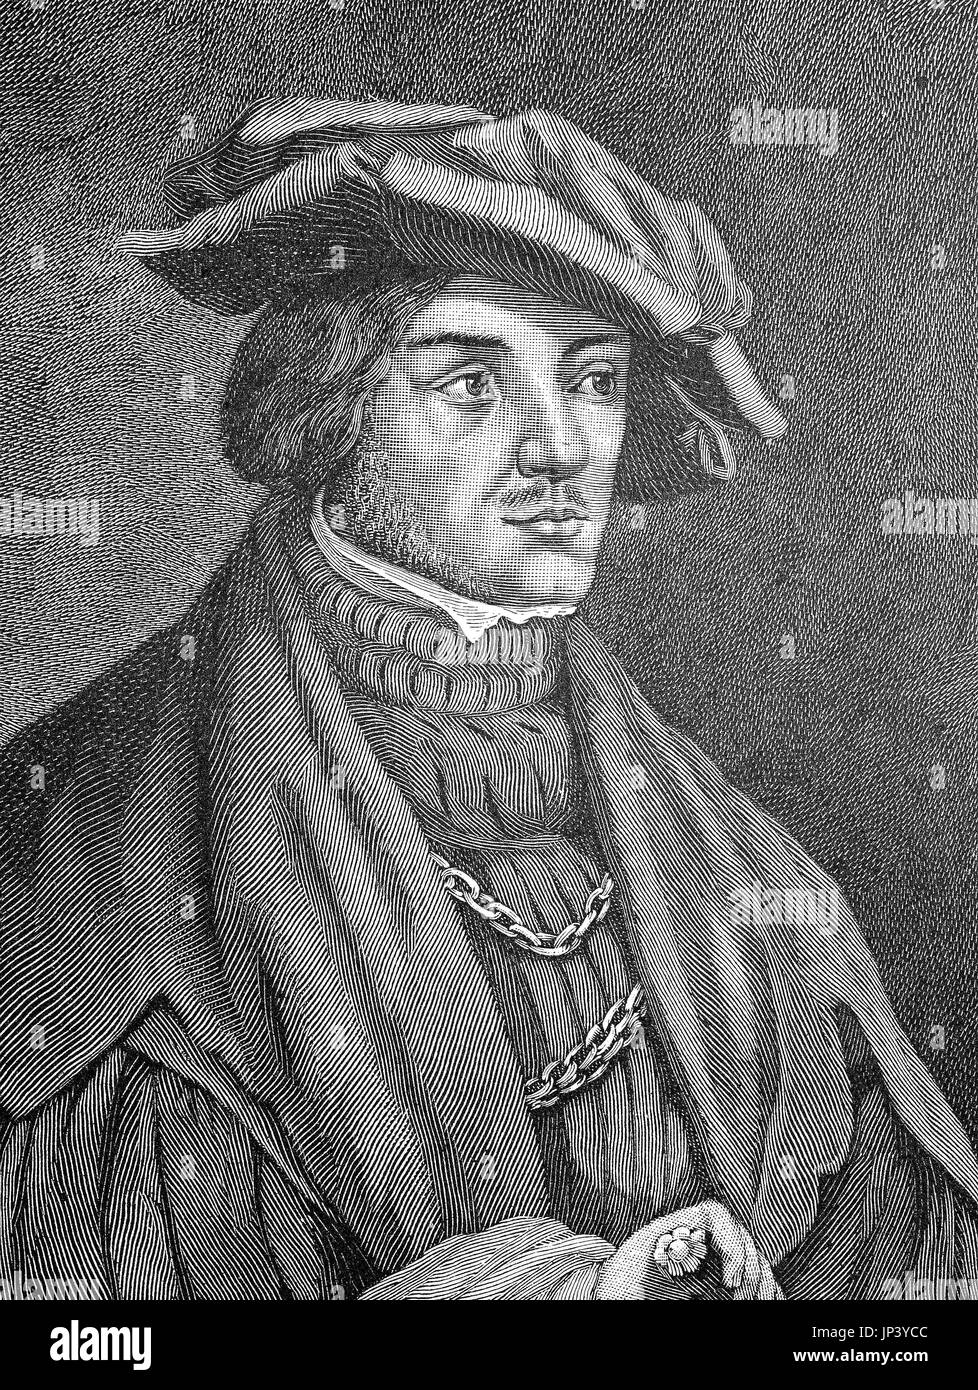 Ulrich von Hutten, 21 Aprile 1488 - 29 agosto 1523, Era un studioso tedesco, poeta satiro e riformatore, digitale Riproduzione migliorata di una xilografia la pubblicazione a partire dall'anno 1888 Foto Stock